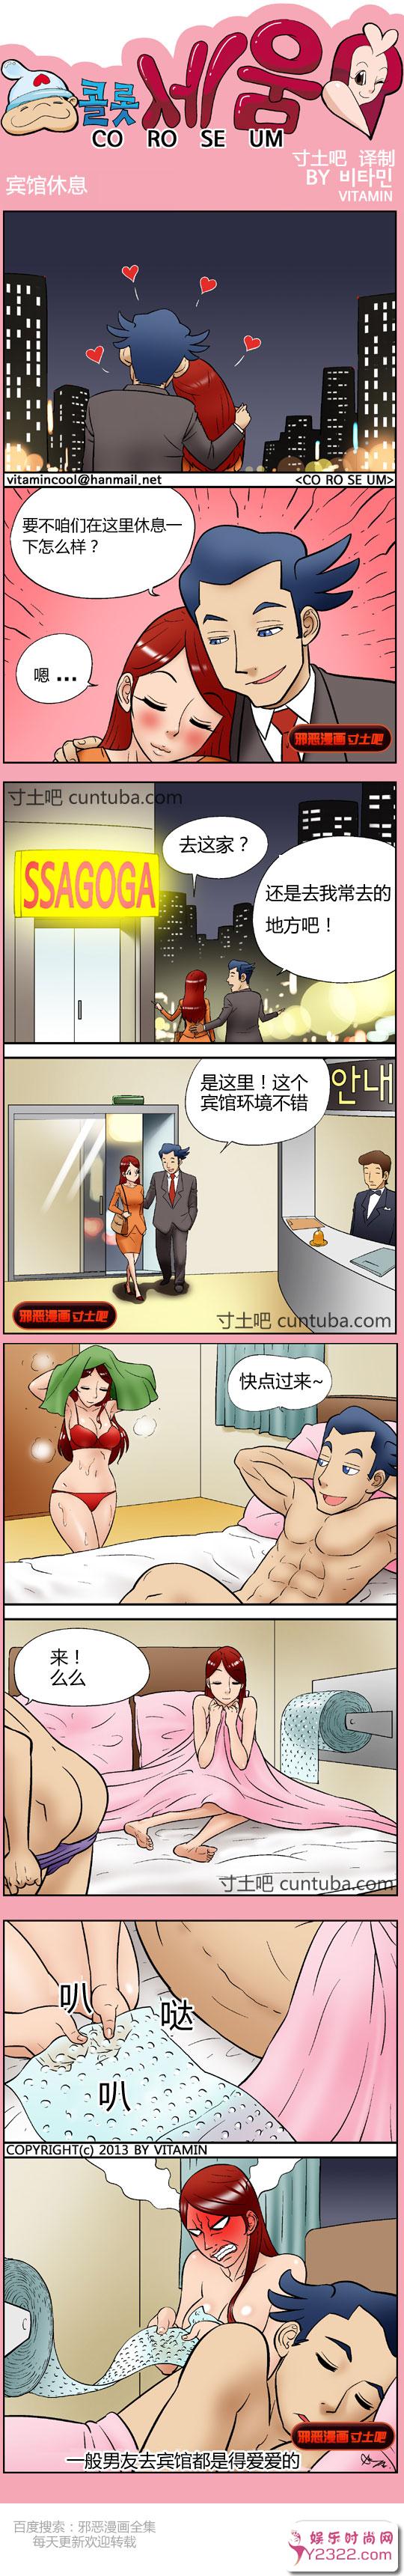 少女在线漫画：披萨恋恋曲宾馆休息_m.y2ooo.com